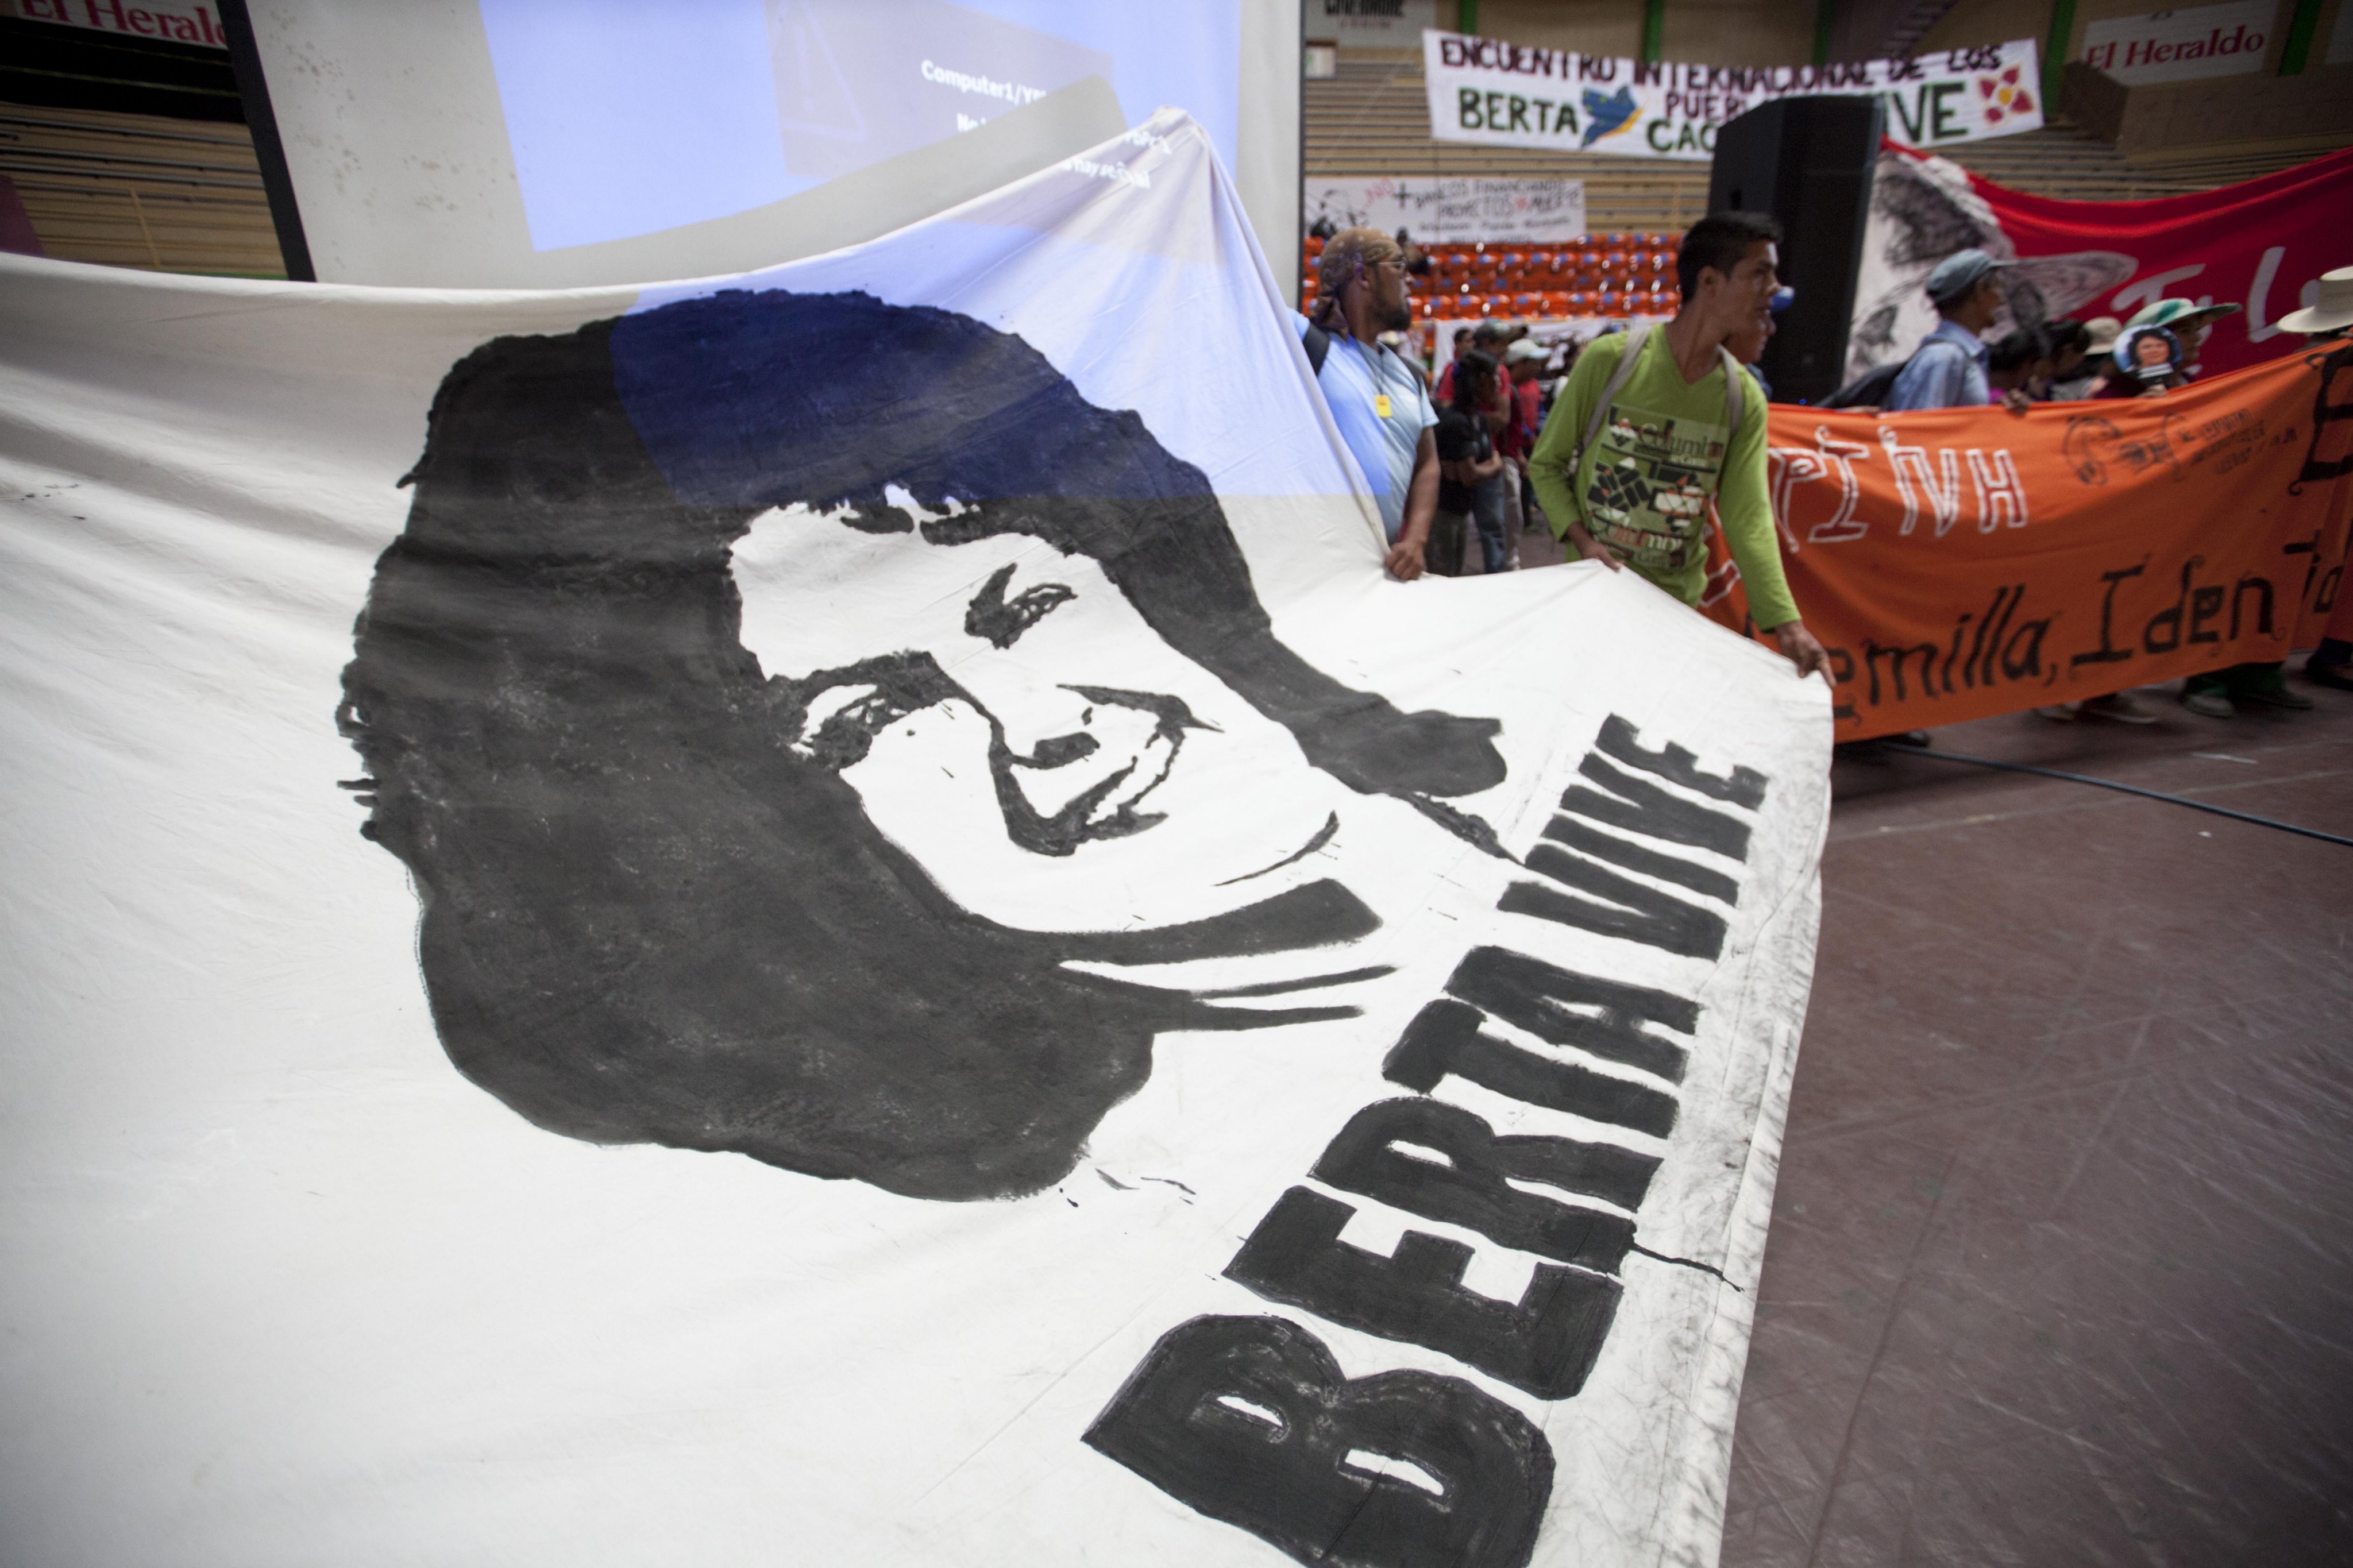 Tras el asesinato de Berta Cáceres el 3 de marzo de 2016 se han registrado protestas que cuestionan las políticas de Estado en Honduras.